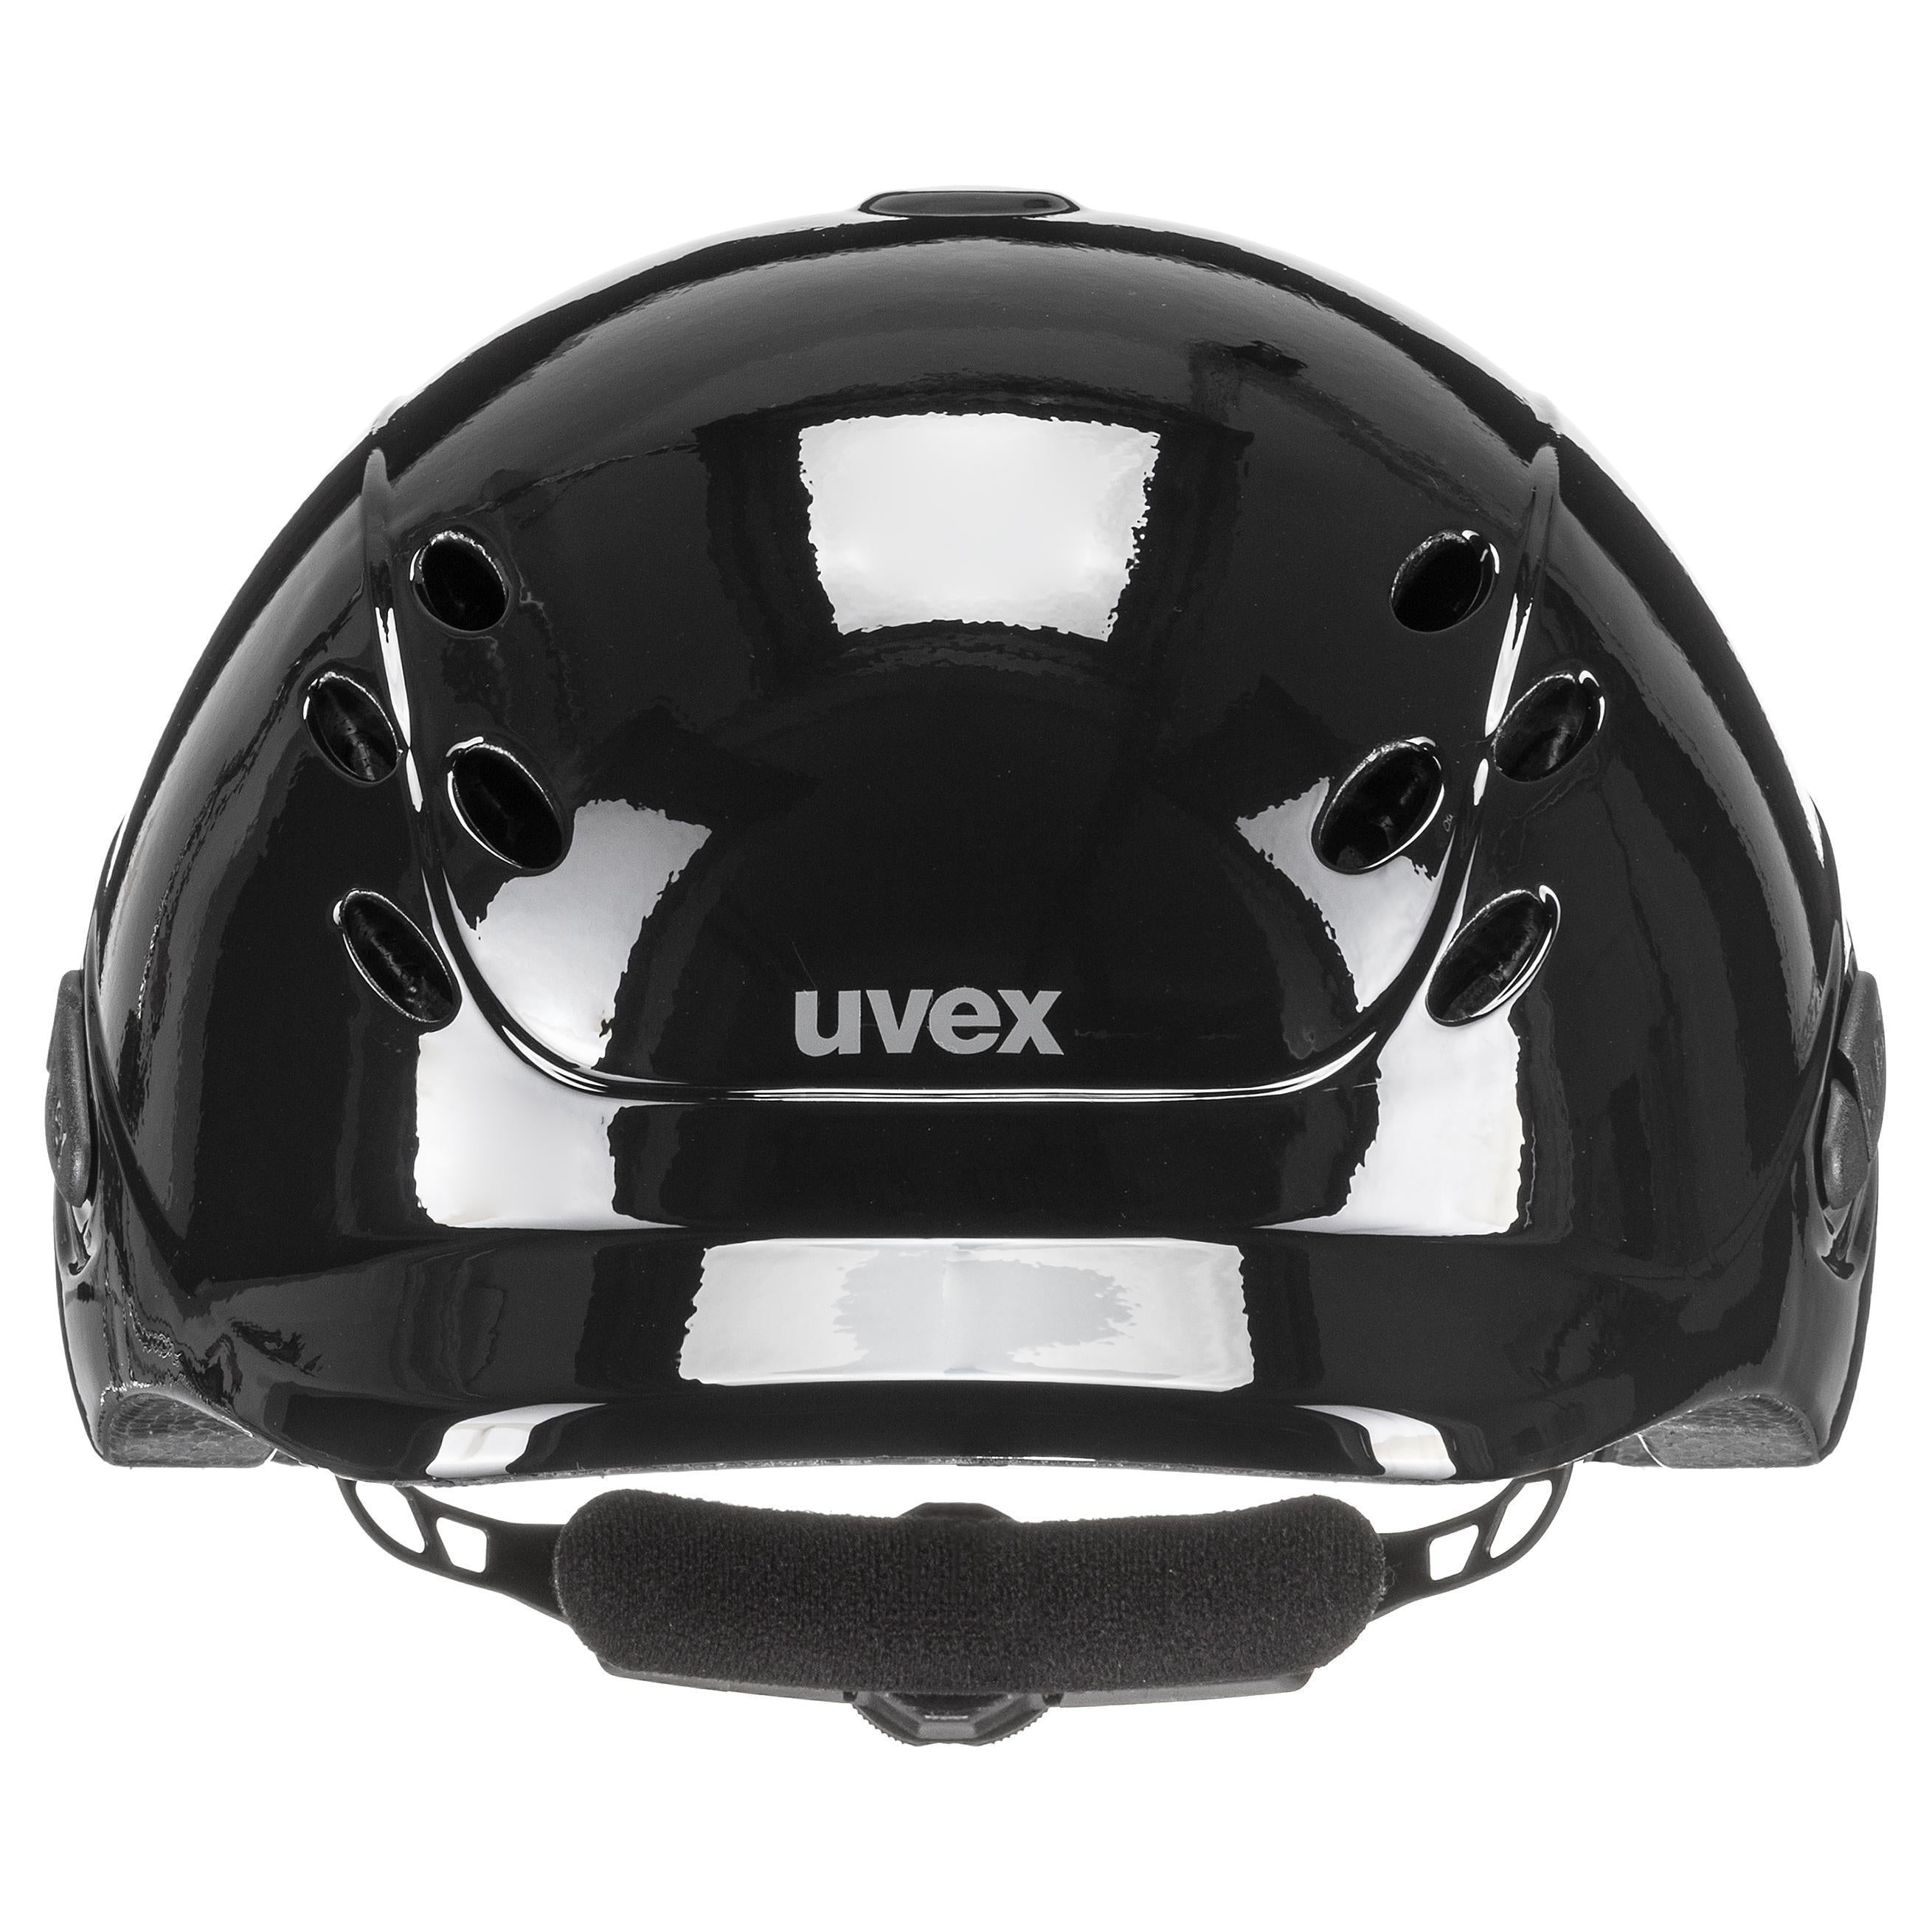 Uvex Bonnet d'équitation réglable pour enfant taille 49-54 cm onyxx uni noir brillant (NOUVEAU)